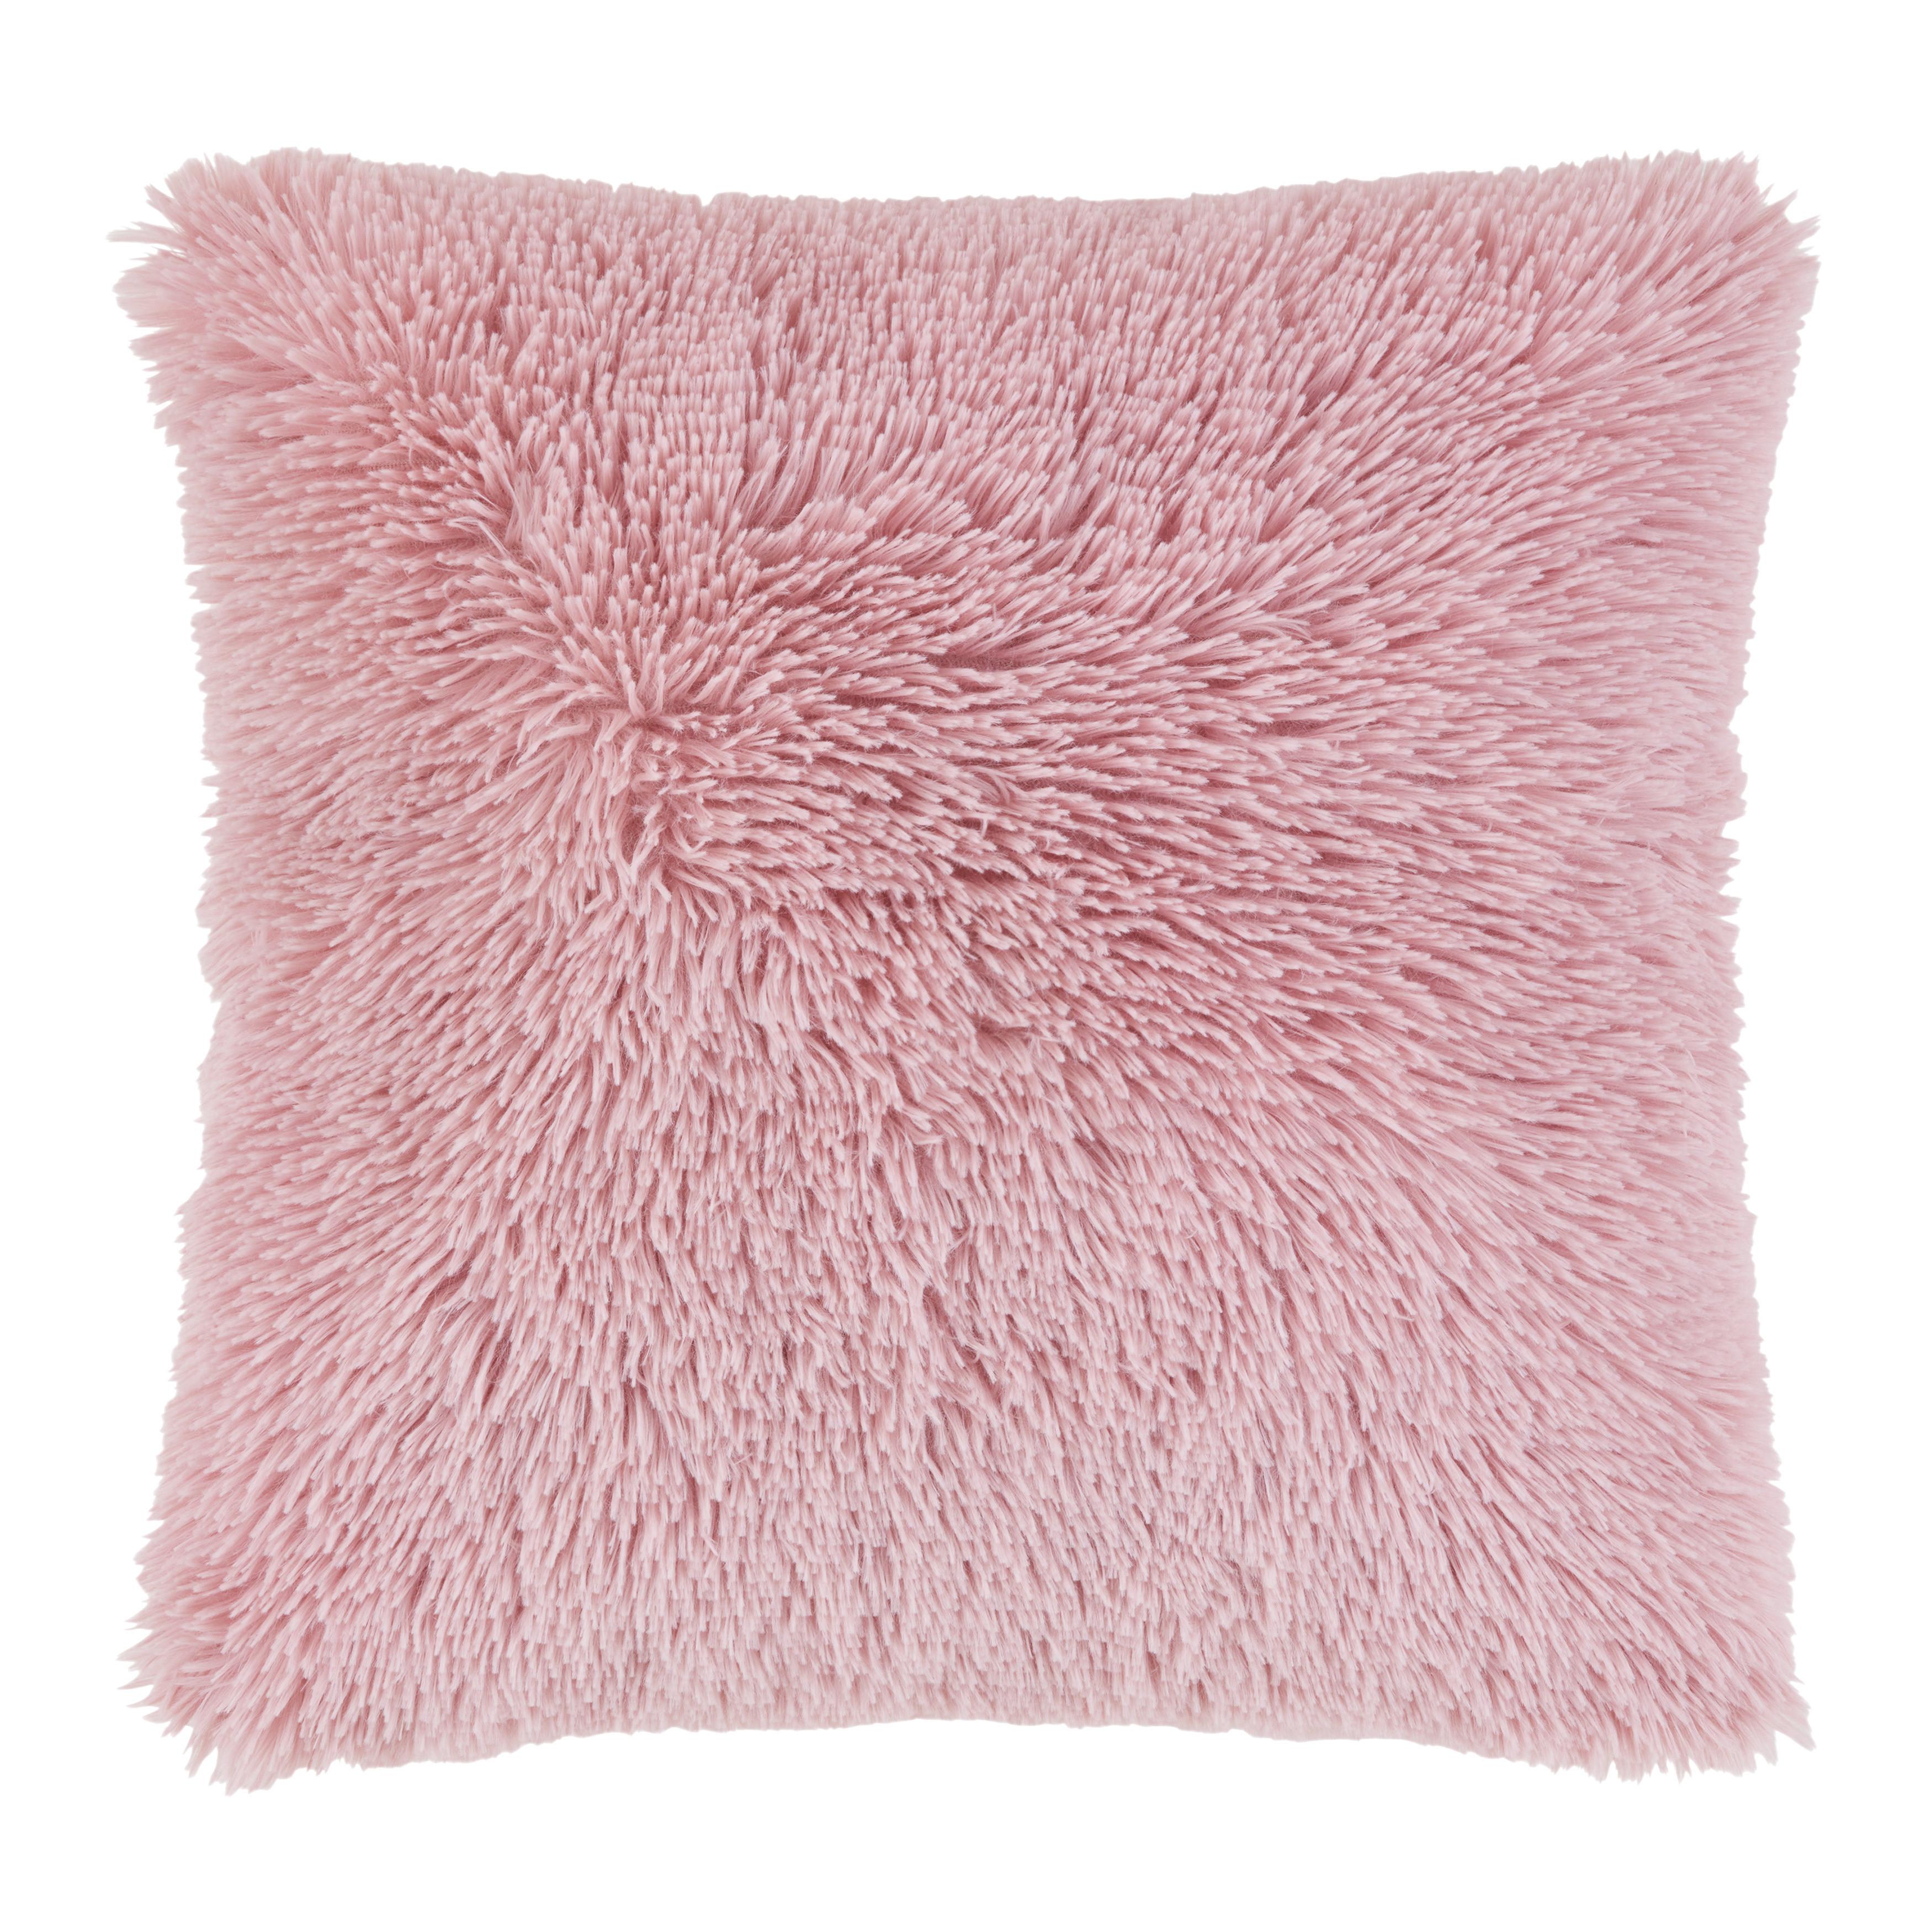 Dekorační Polštář Fluffy, 45/45cm, Růžová - růžová, Romantický / Rustikální, textil (45/45cm) - Modern Living